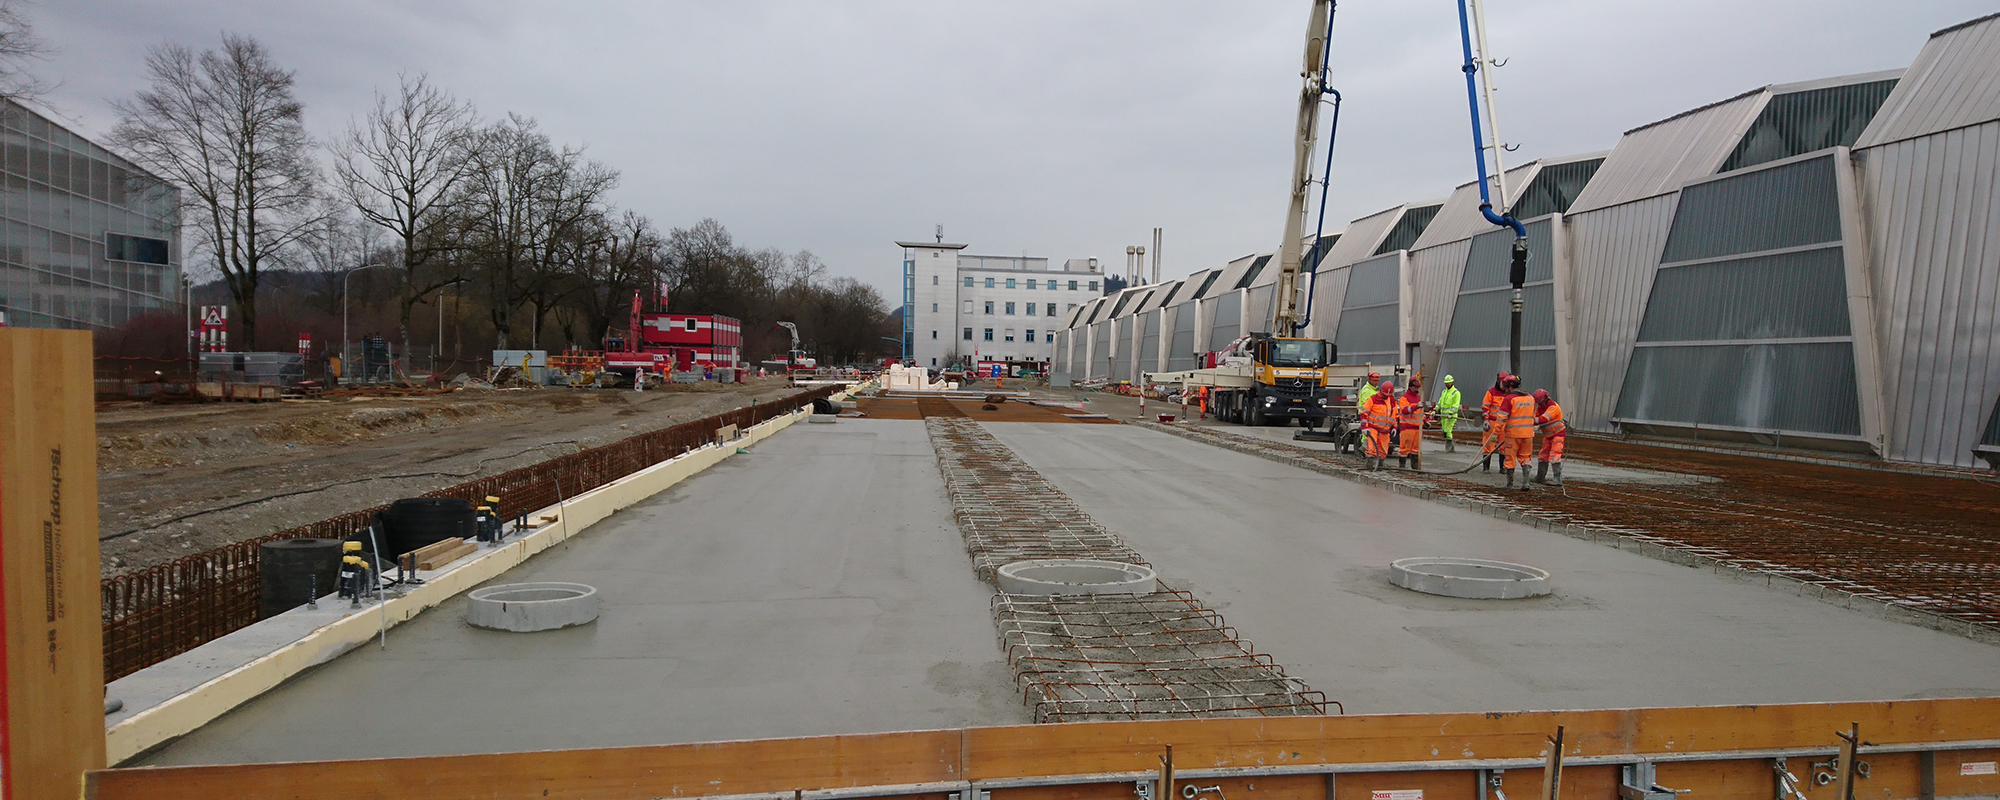 zirkulit® Beton wird erstmals für das Tramdepot Bern ausgeliefert